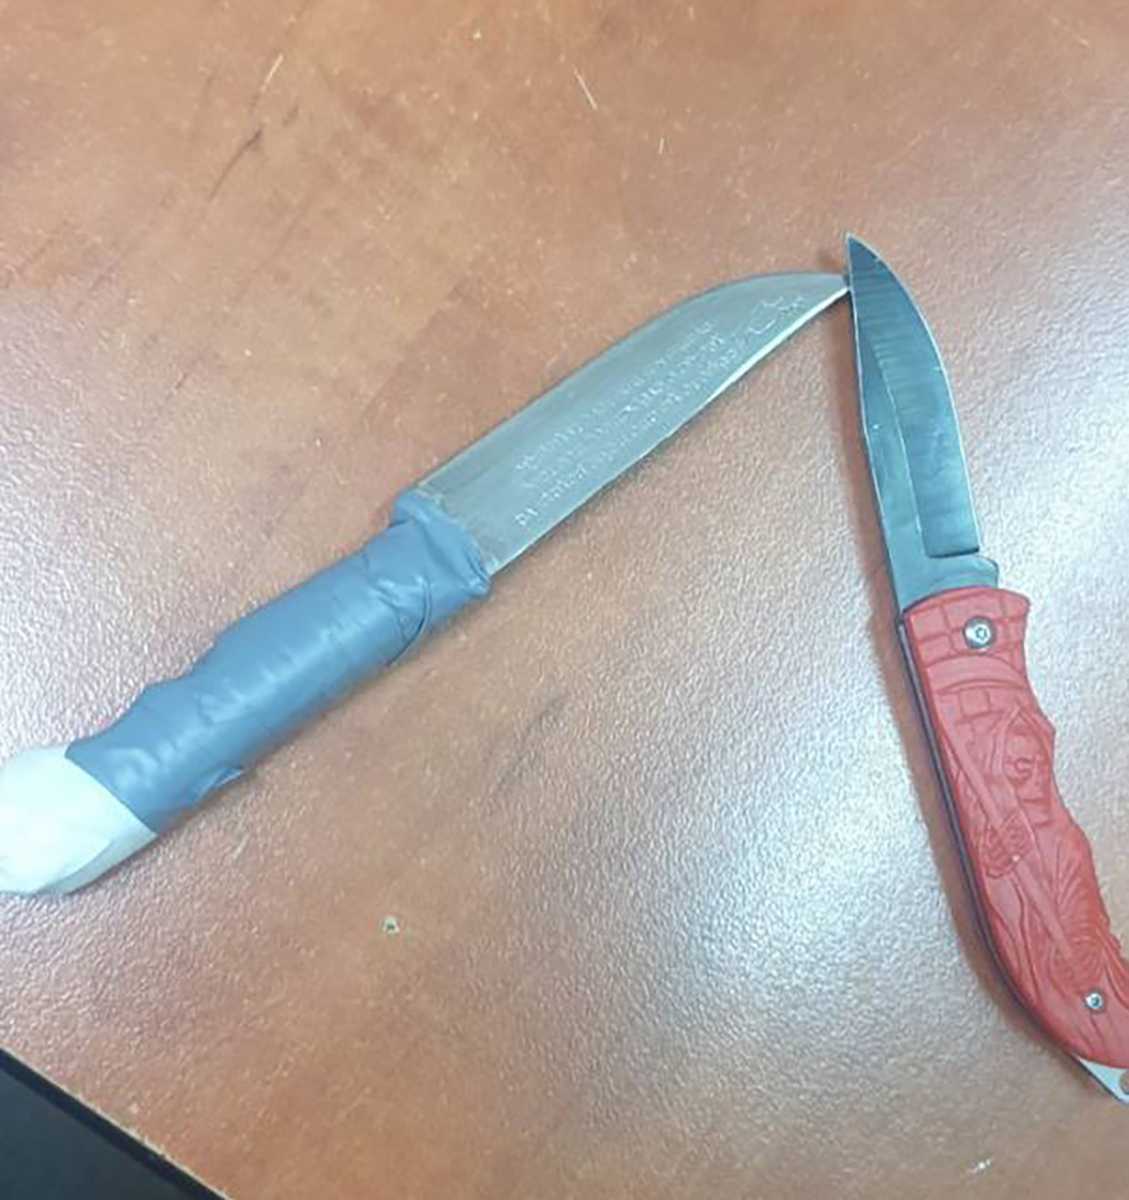 Ανήλικοι στην Ηλιούπολη επιτέθηκαν με αυτά τα μαχαίρια σε συνομήλικο τους για να του πάρουν το κινητό